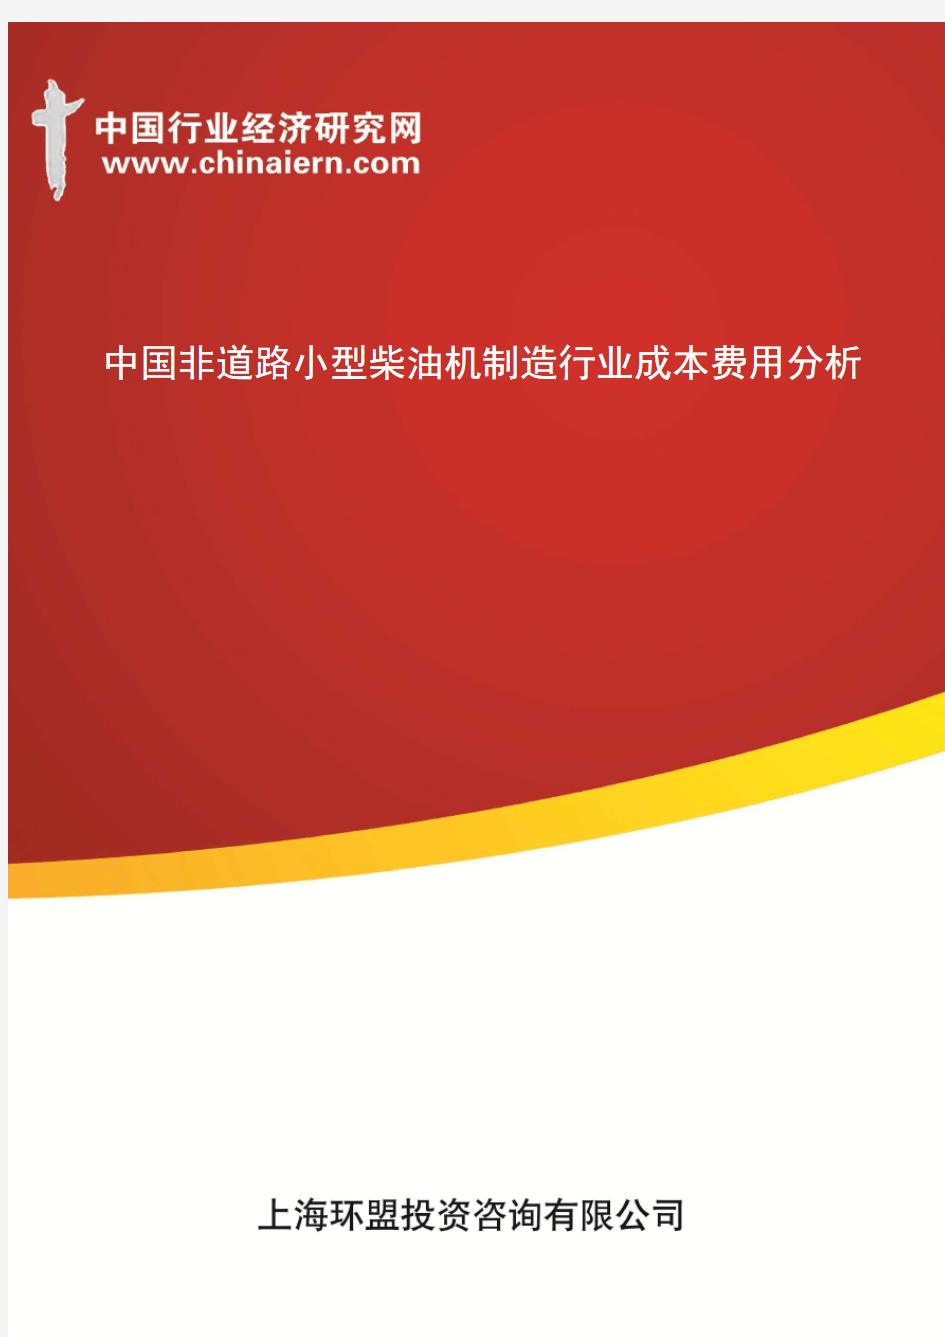 中国非道路小型柴油机制造行业成本费用分析(上海环盟)